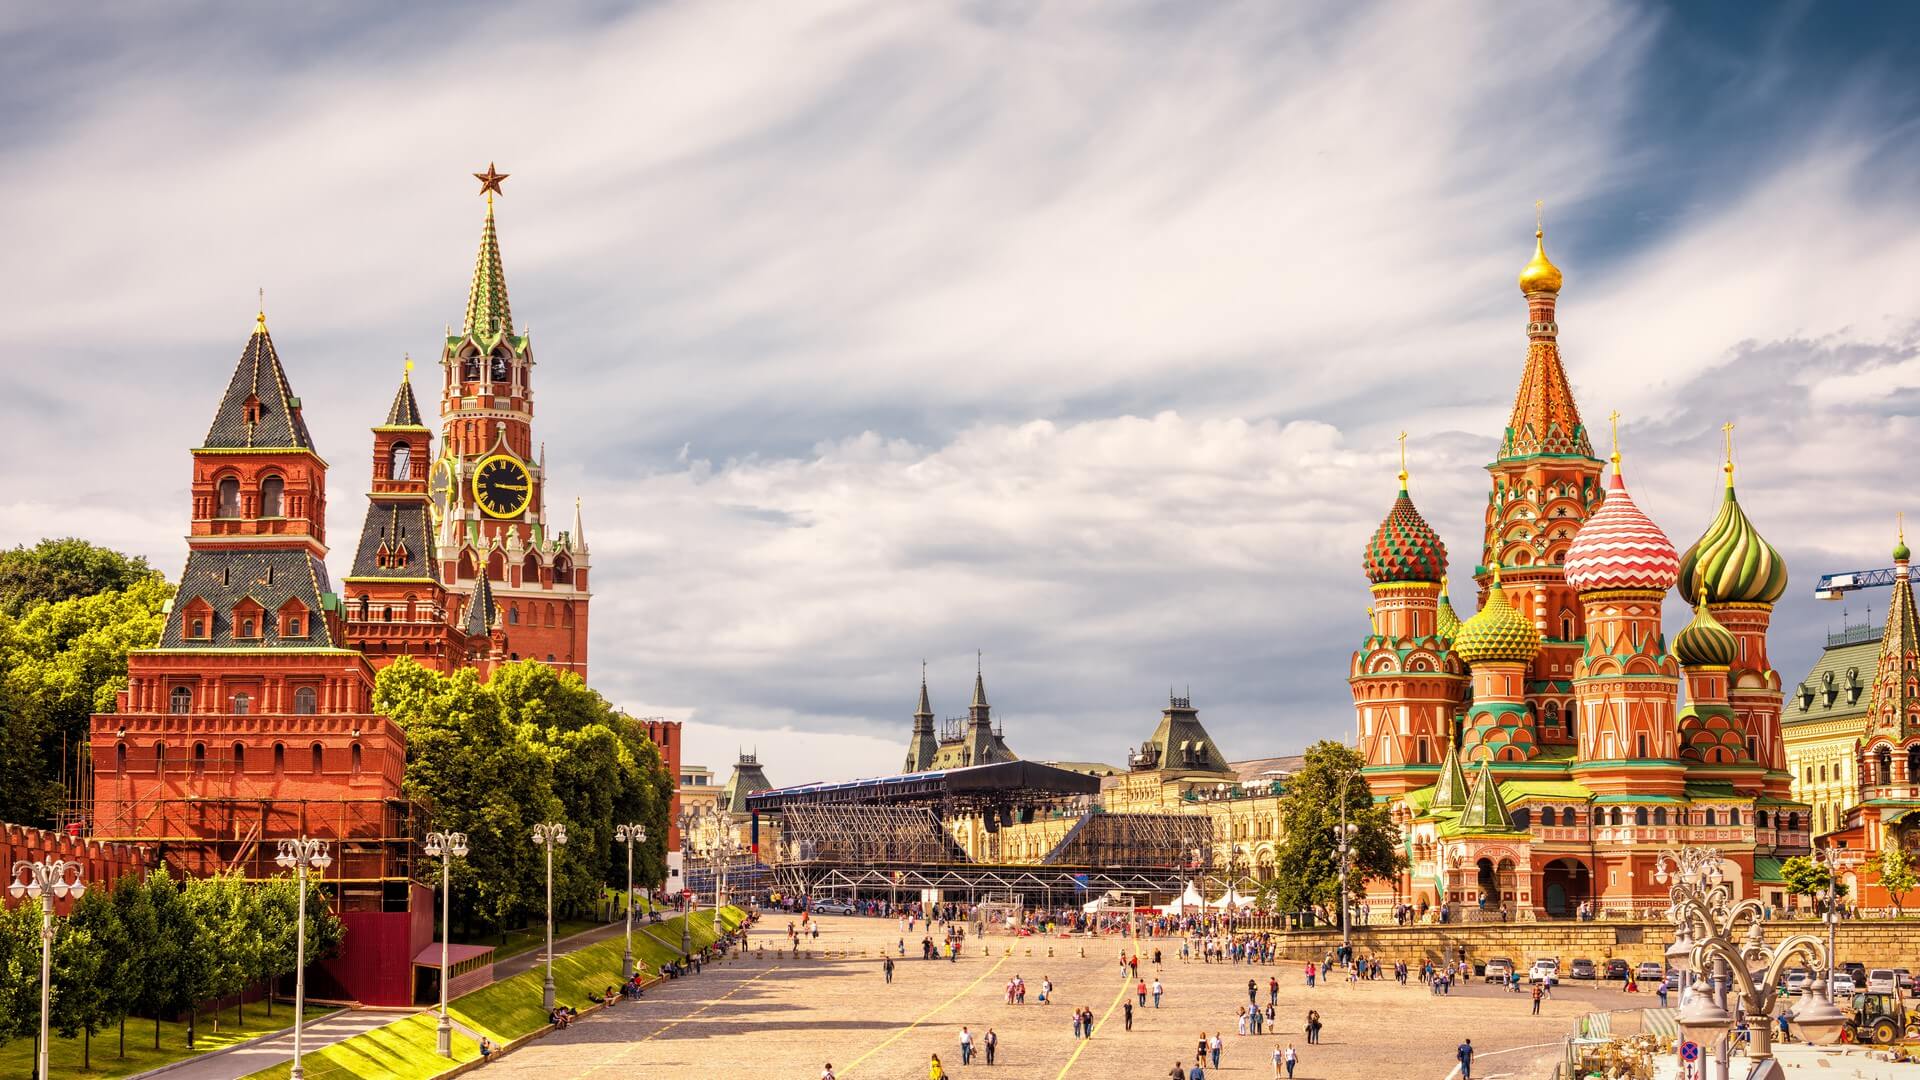 Kremlin de Moscou et de la cathédrale Saint-Basile sur la Place Rouge, Moscou, Russie. L'ancien Kremlin de Moscou est la principale attraction touristique de la ville. Belle vue panoramique sur le coeur de Moscou par beau temps.